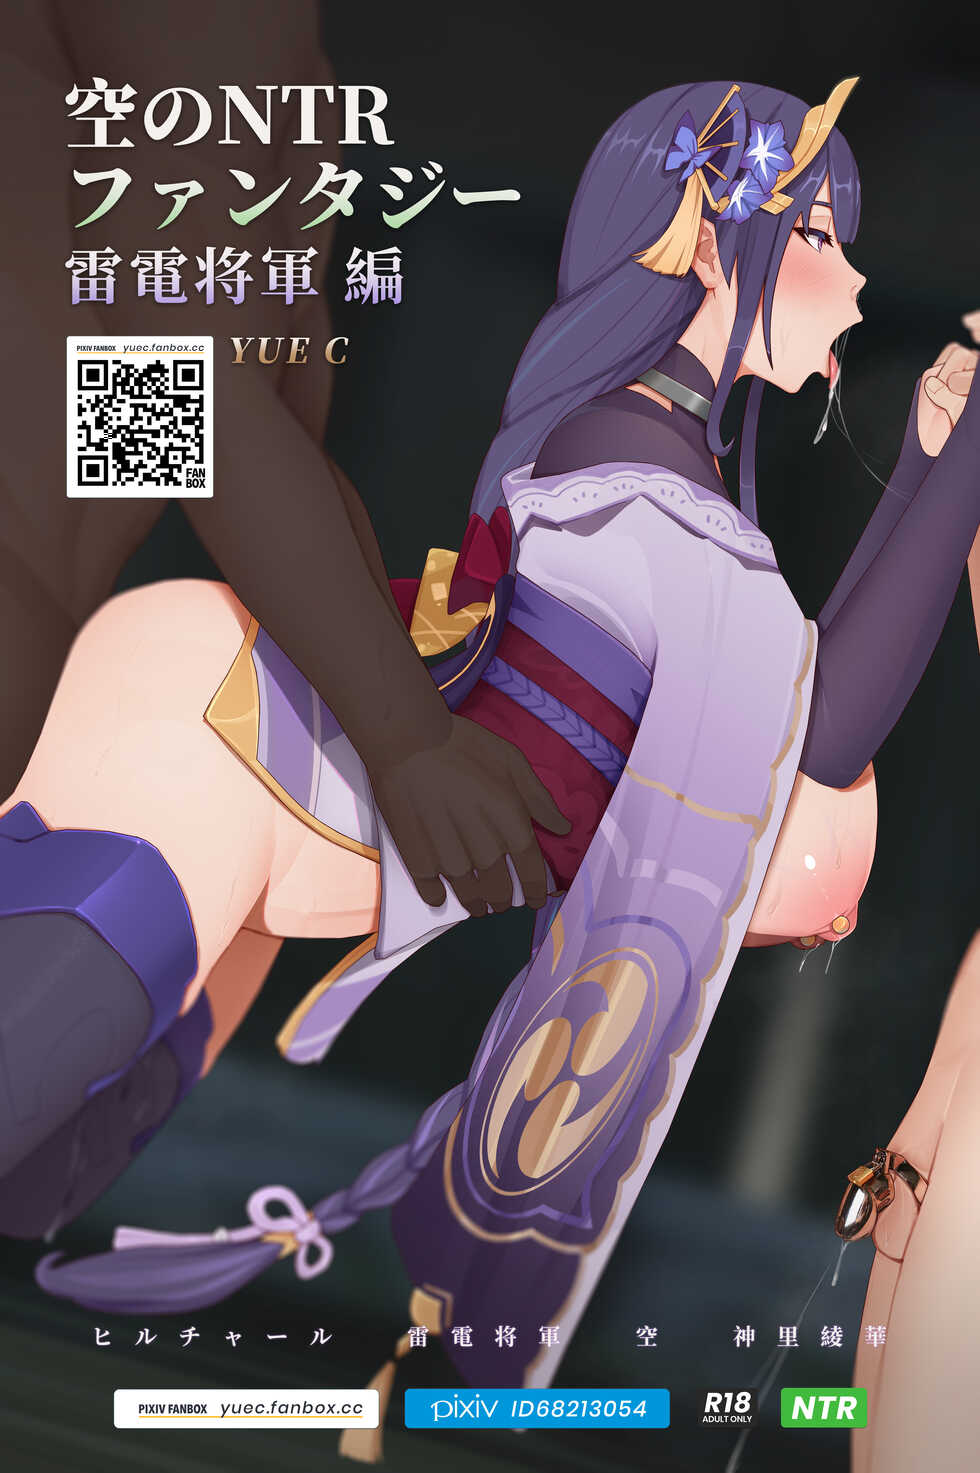 [YUE C] Sora no NTR Fantasy - Raiden Shogun Hen (Genshin Impact) - Page 1